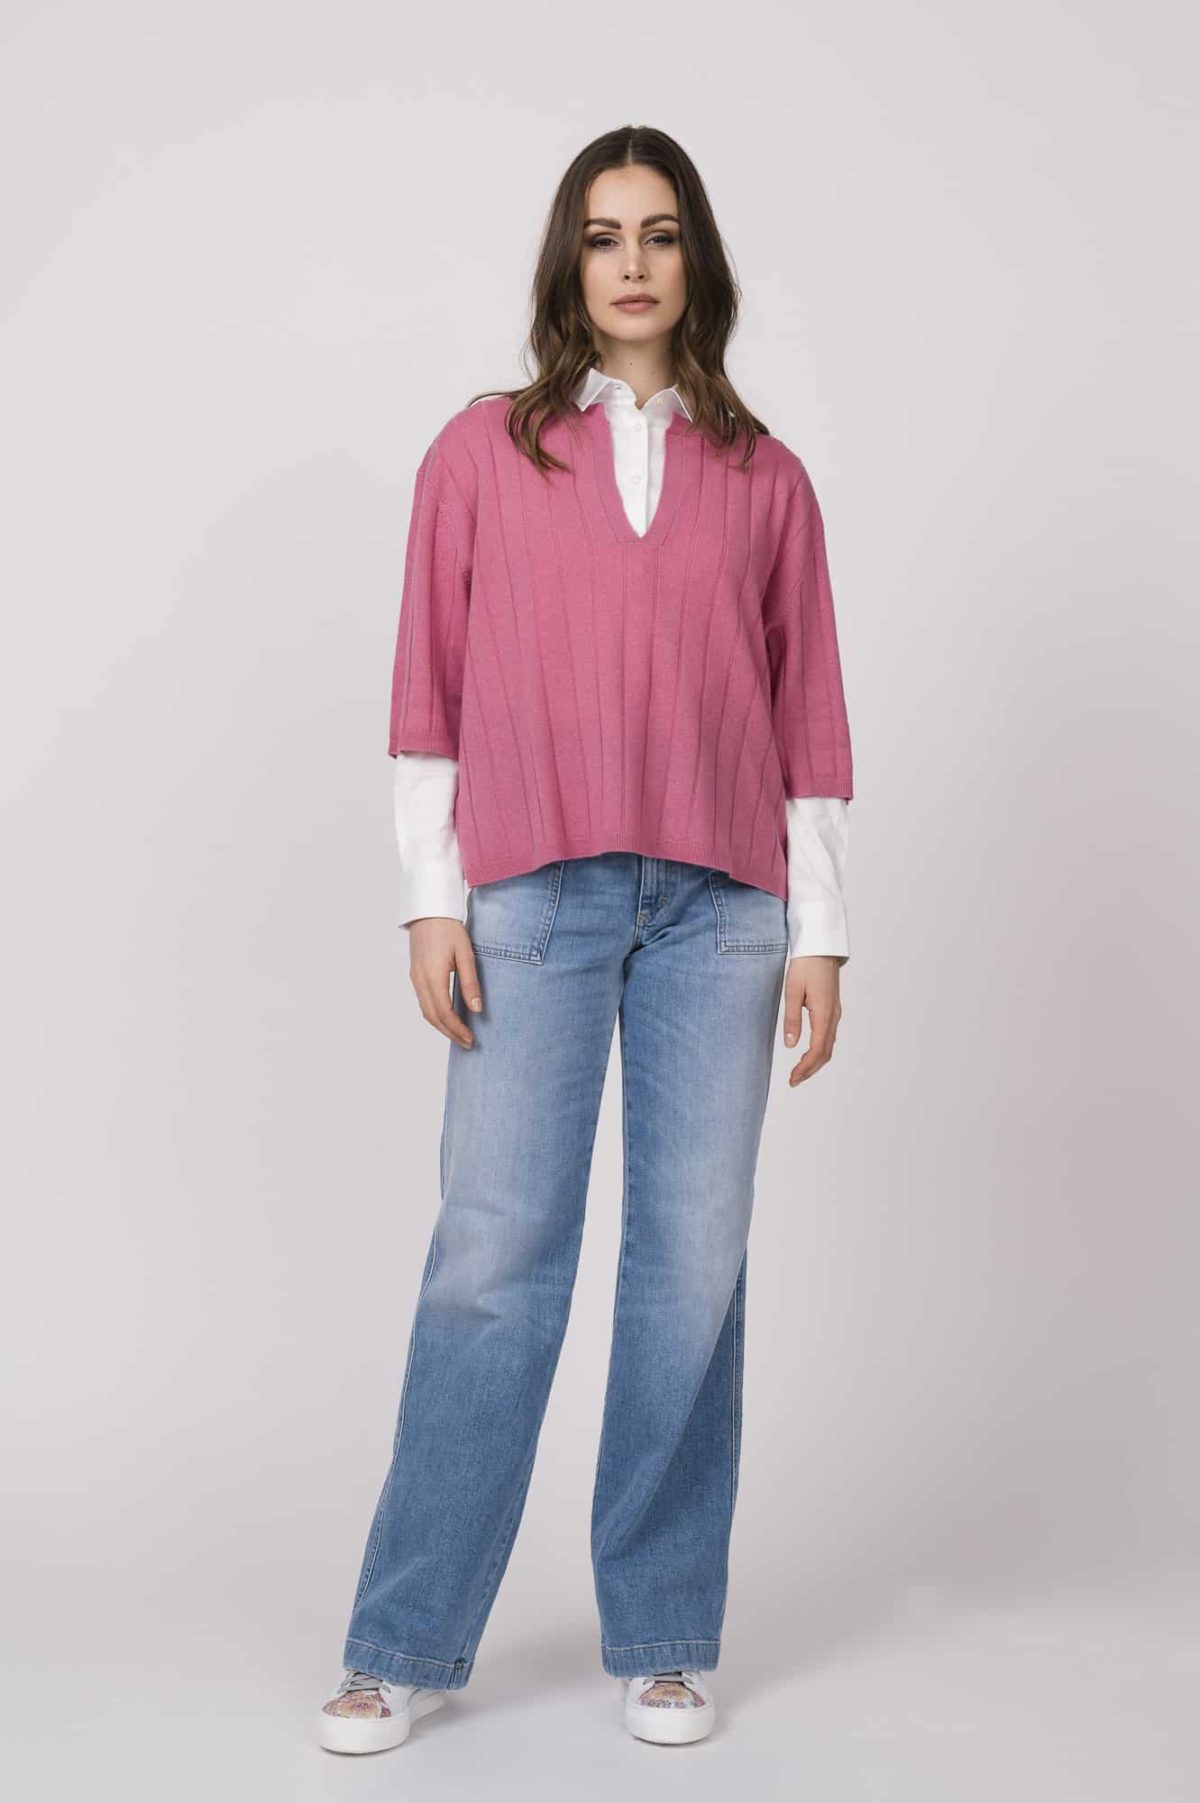 Pullover FTC, Bluse SOLUZIONE, Jeans CLOSED FS 2023